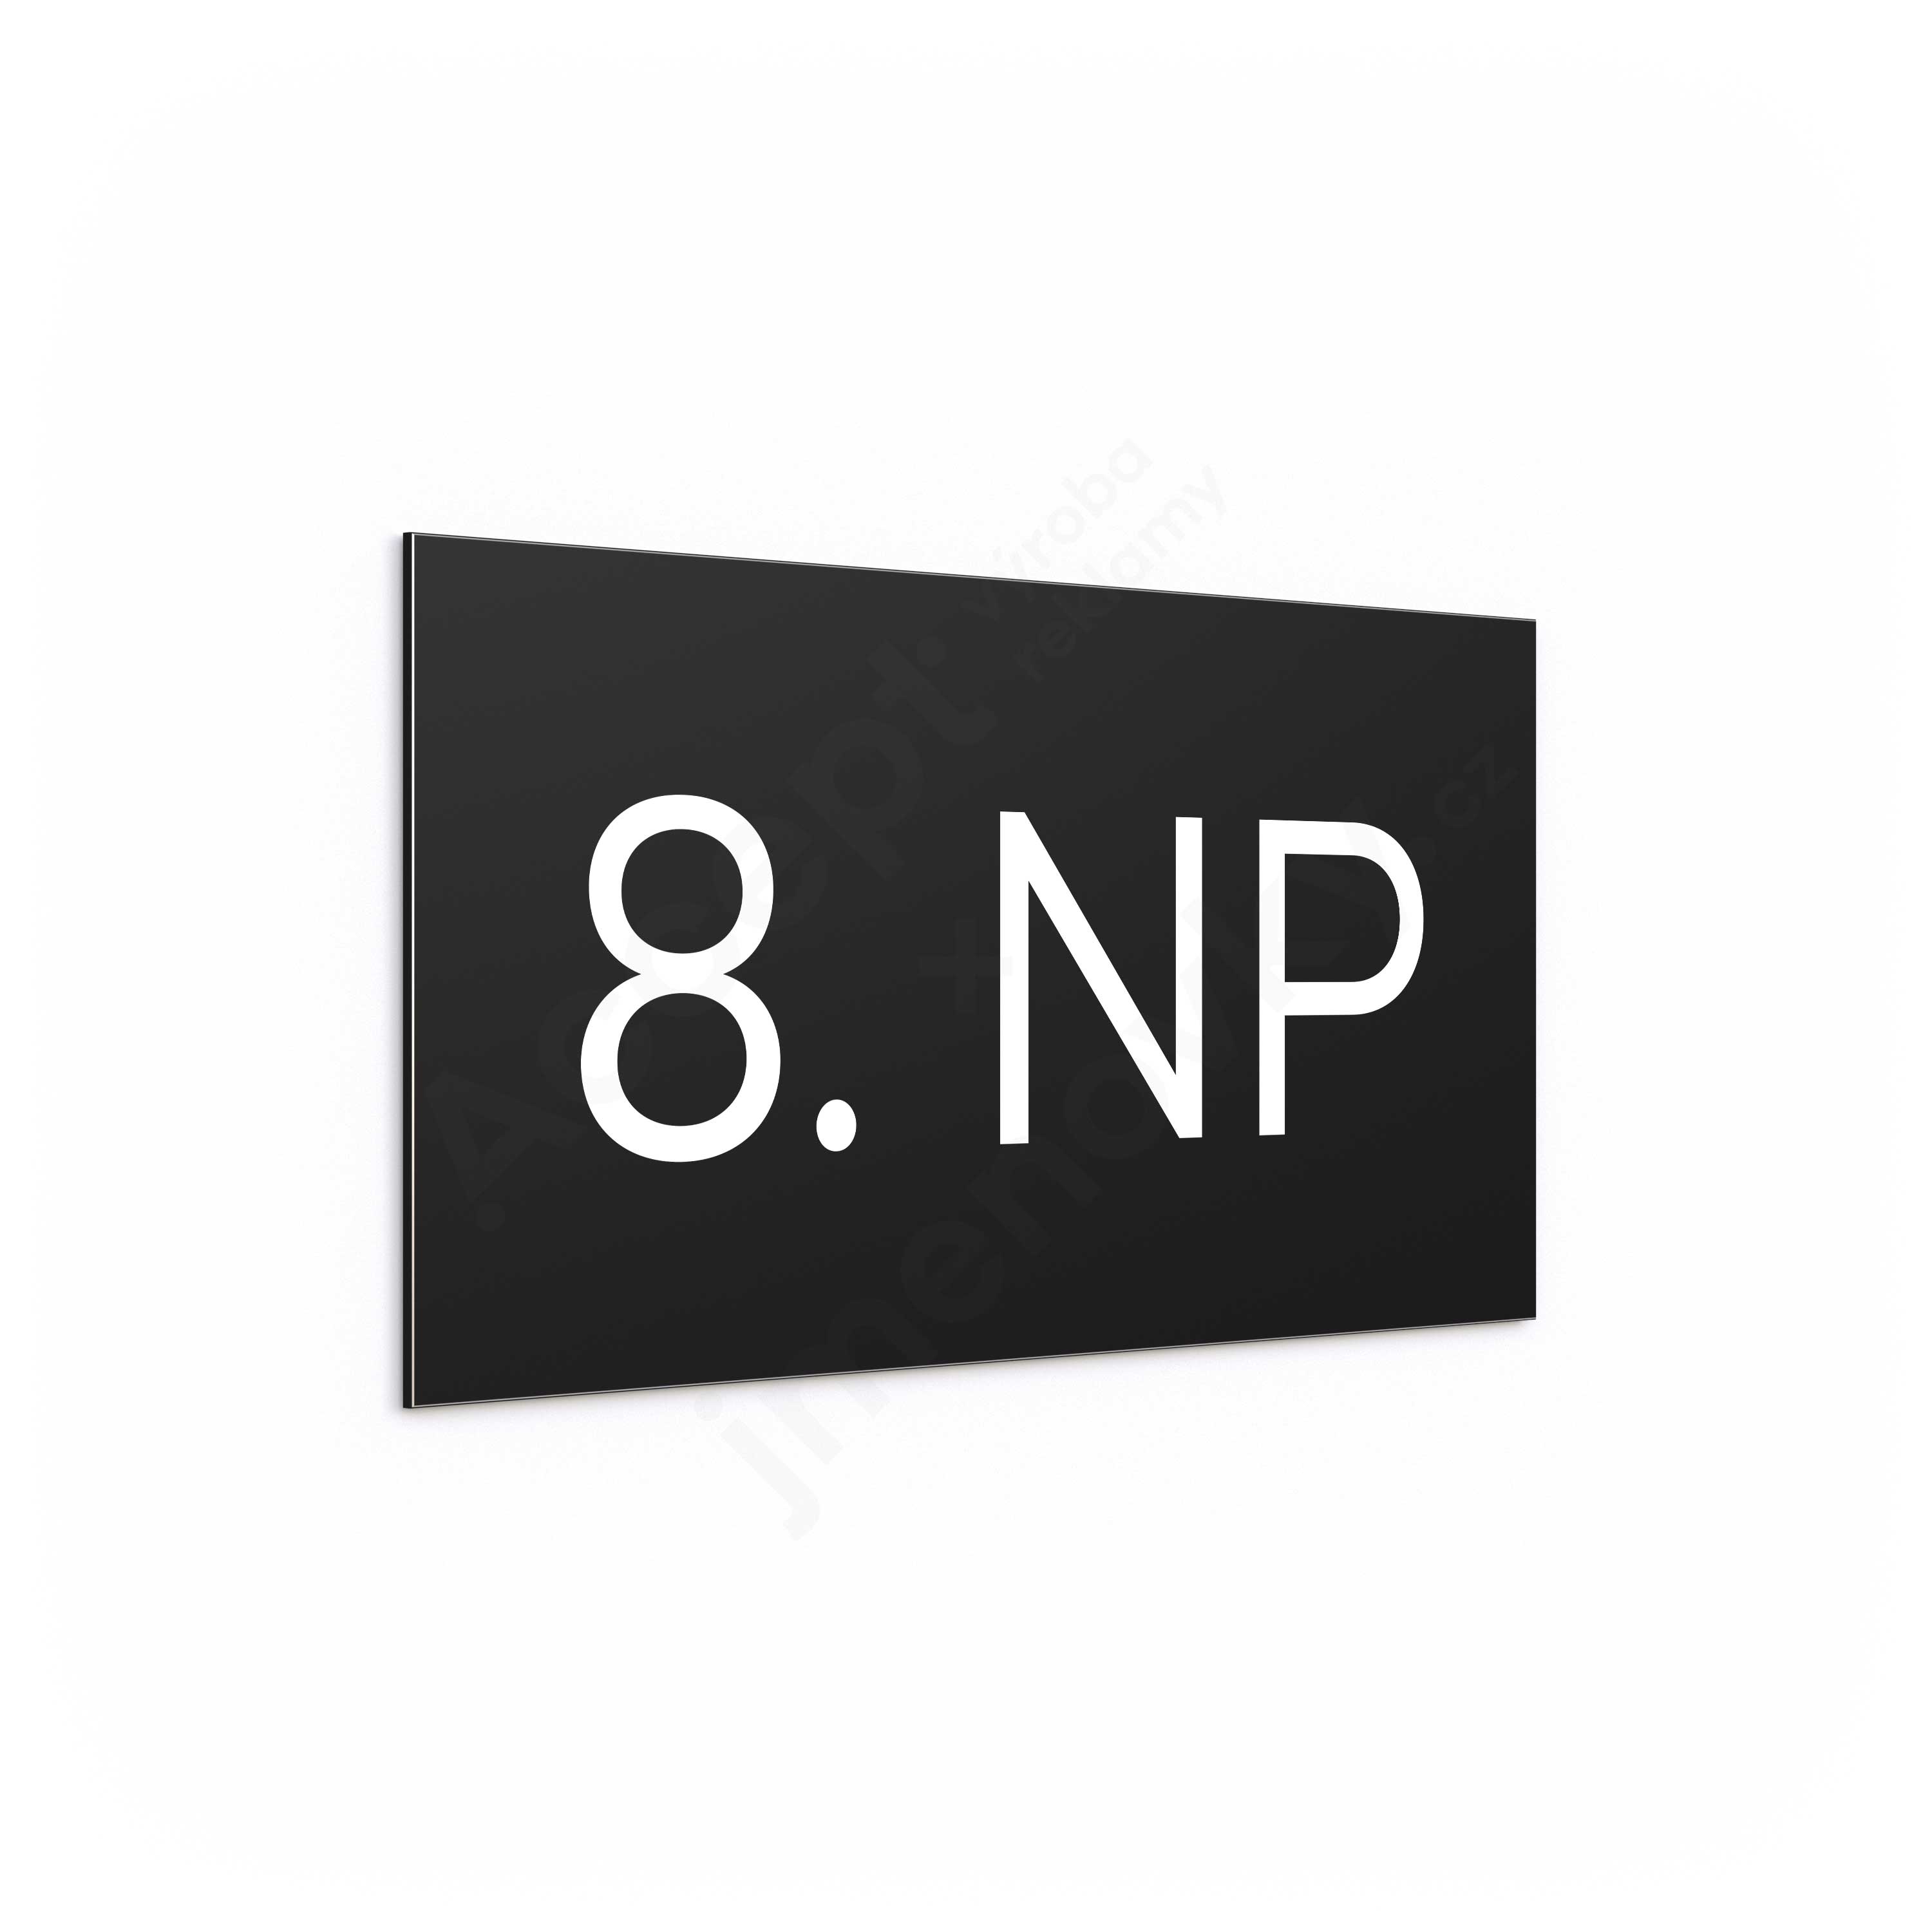 Označení podlaží "8. NP" - černá tabulka - bílý popis